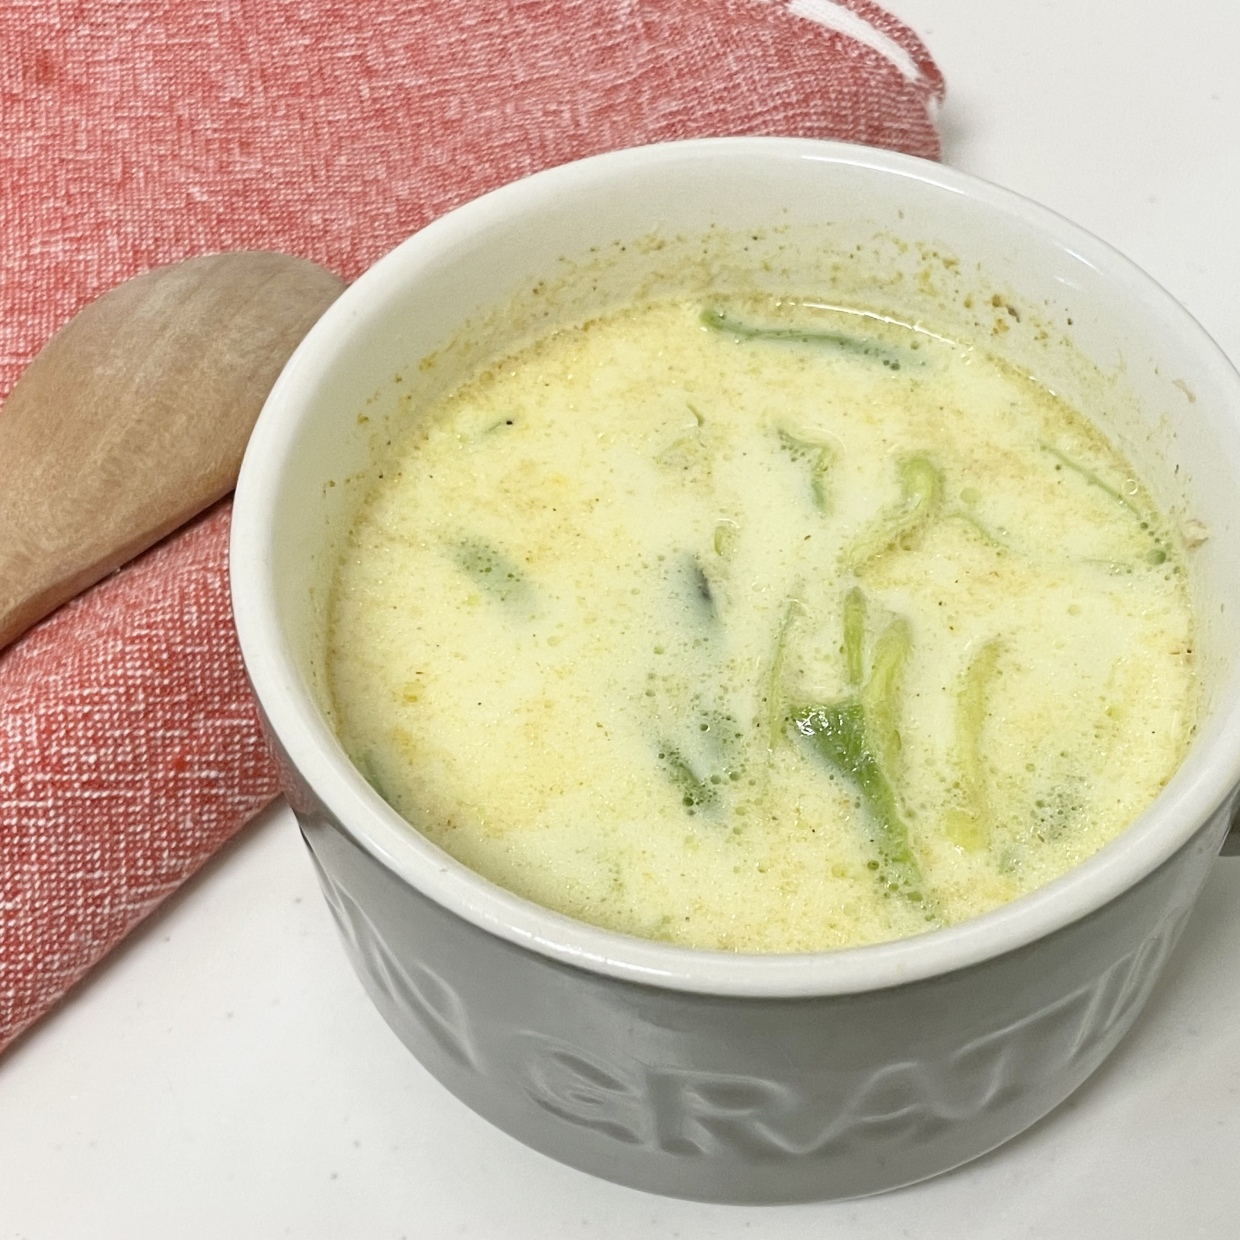  ツナと春キャベツの豆乳カレースープ 